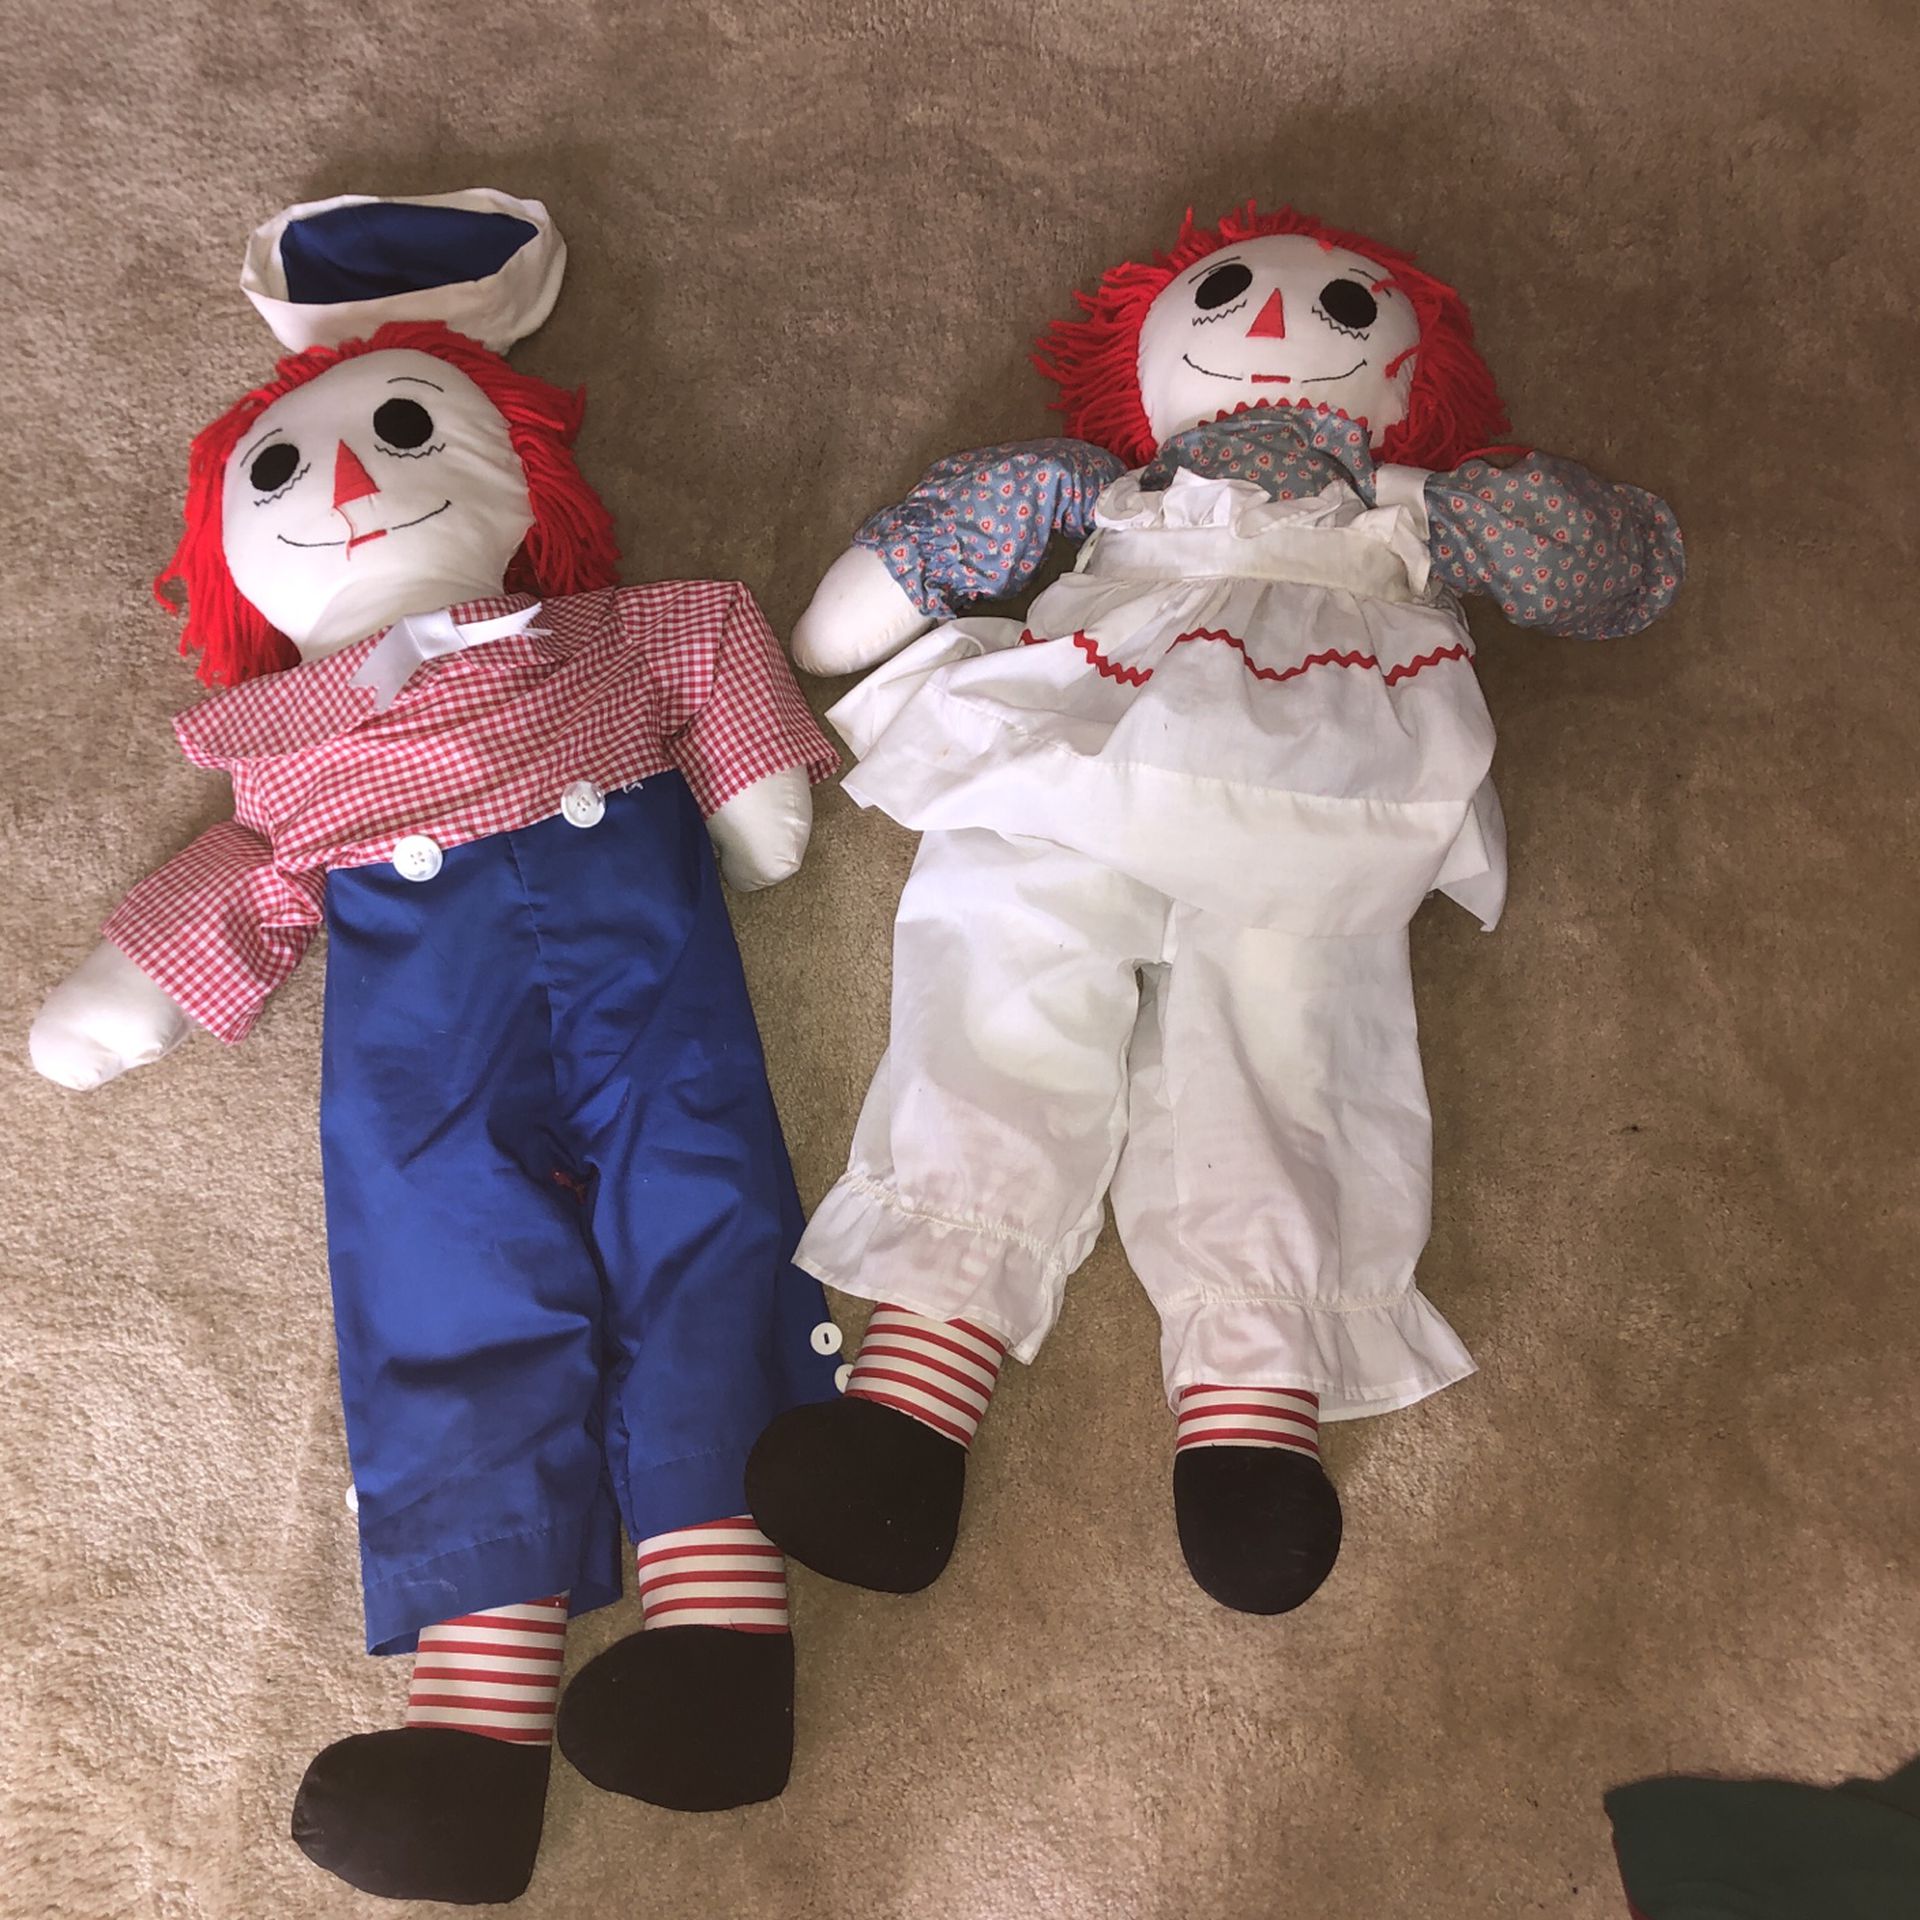 Raggedy Ann and raggedy Andy rag dolls